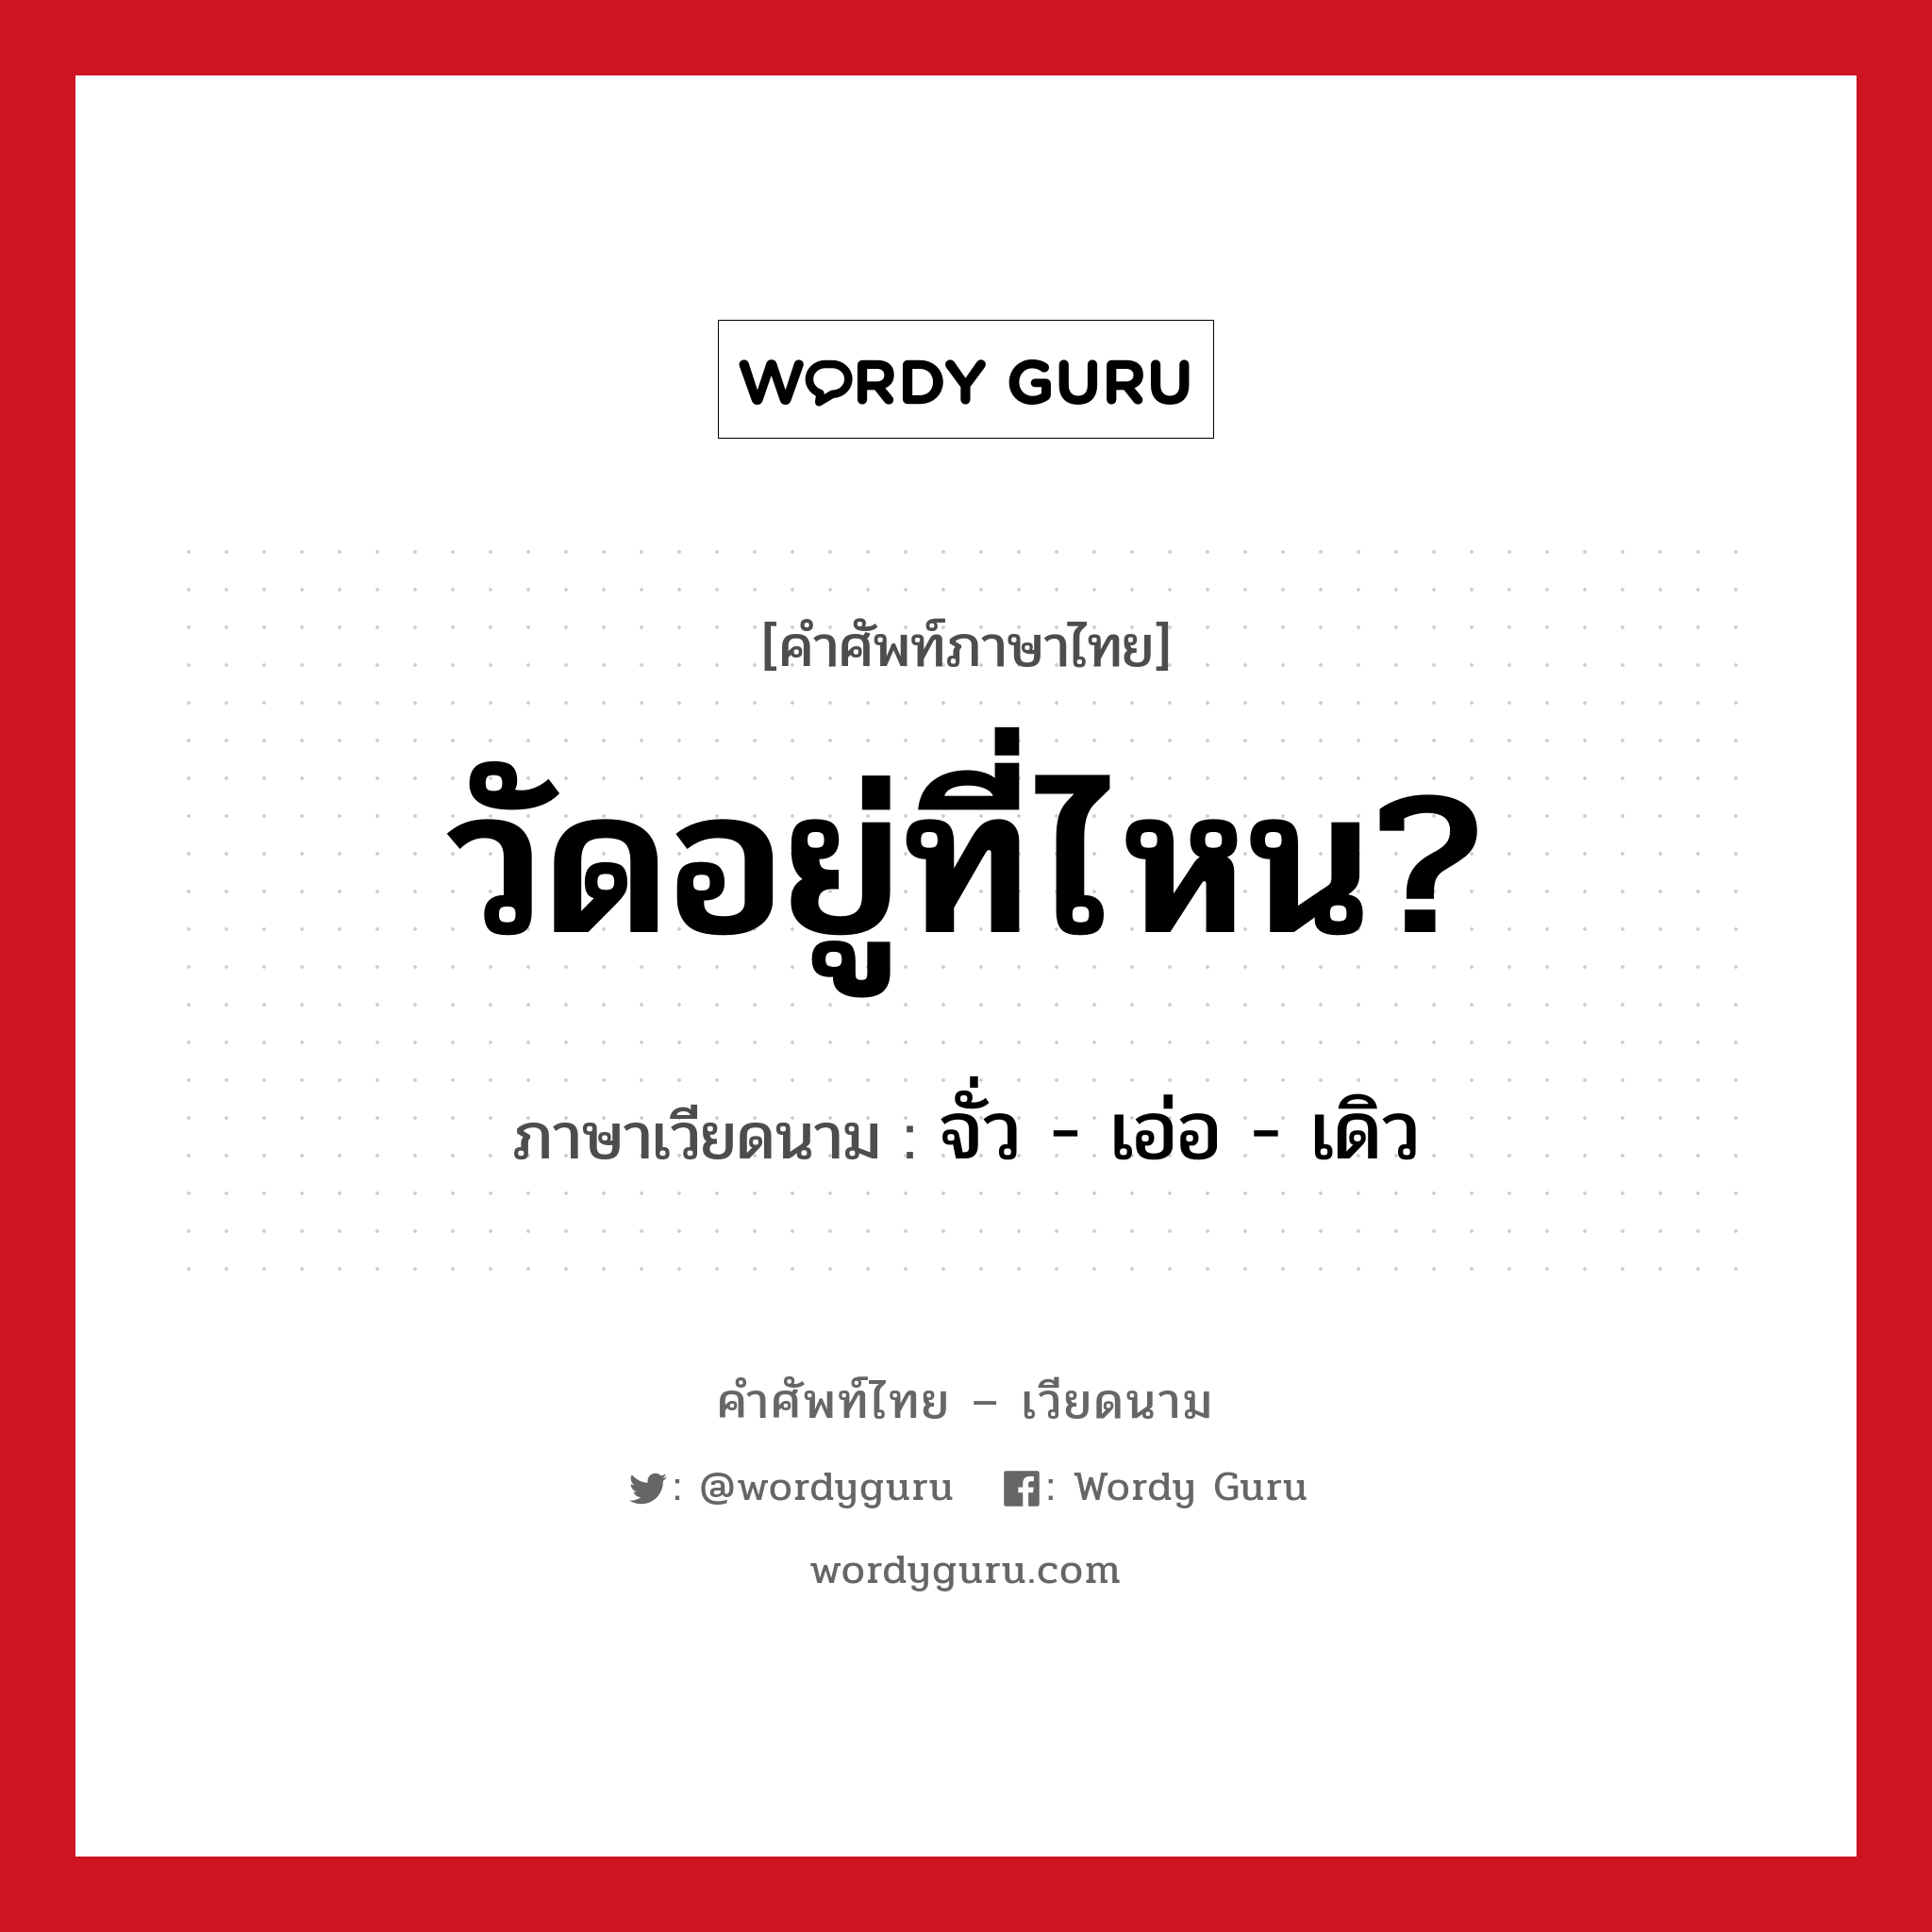 วัดอยู่ที่ไหน? ภาษาเวียดนามคืออะไร, คำศัพท์ภาษาไทย - เวียดนาม วัดอยู่ที่ไหน? ภาษาเวียดนาม จั่ว - เอ่อ - เดิว หมวด การเดินทาง หมวด การเดินทาง